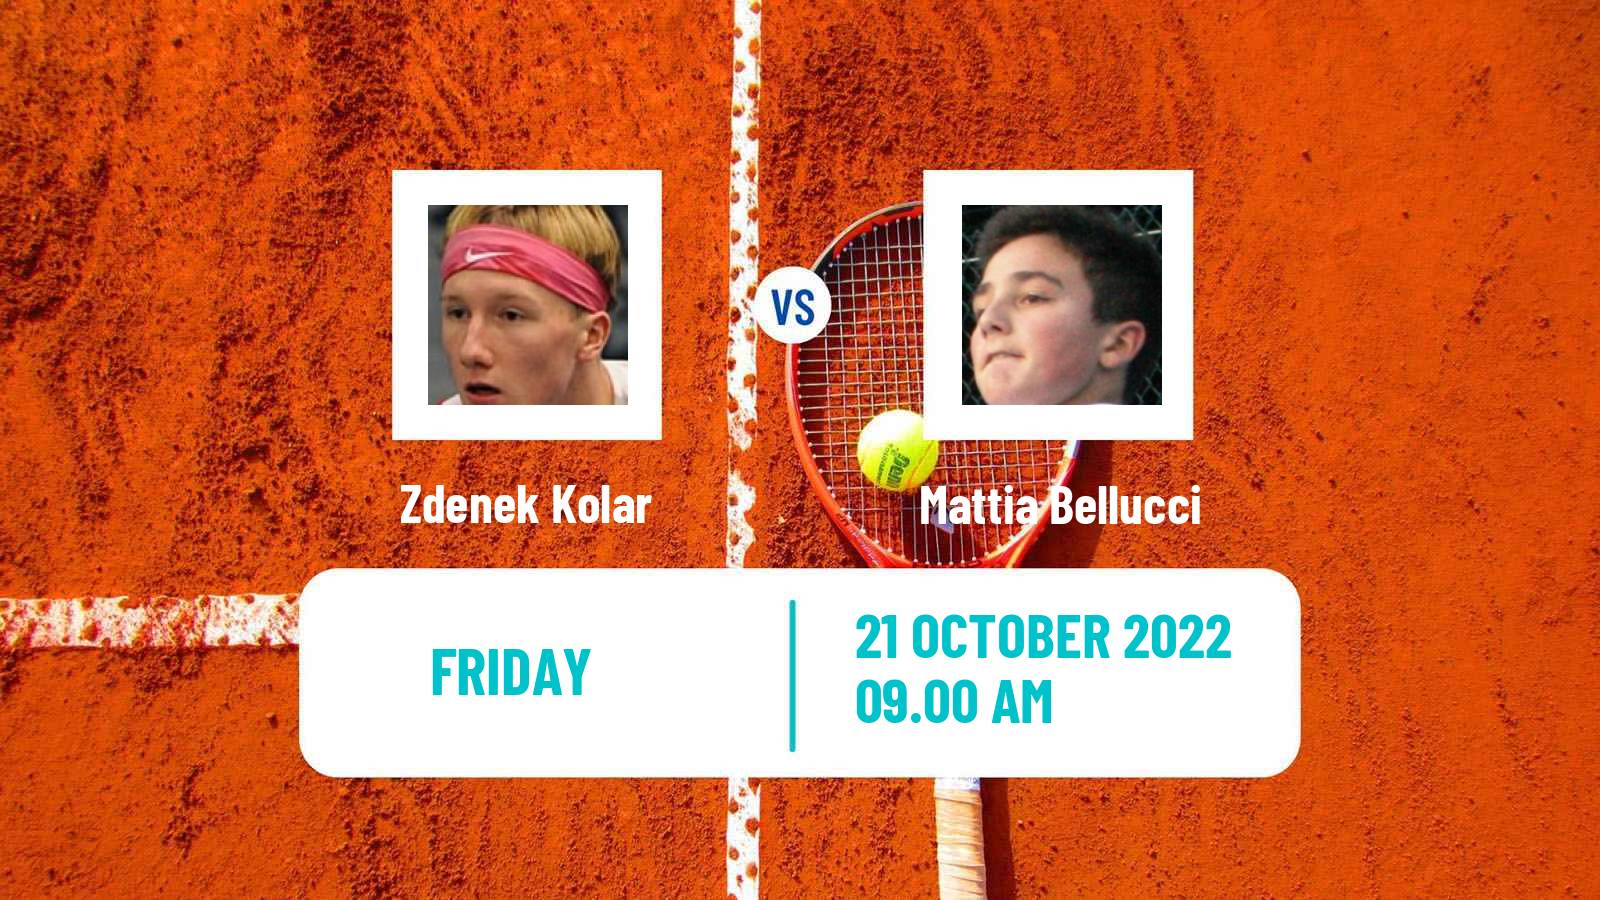 Tennis ATP Challenger Zdenek Kolar - Mattia Bellucci